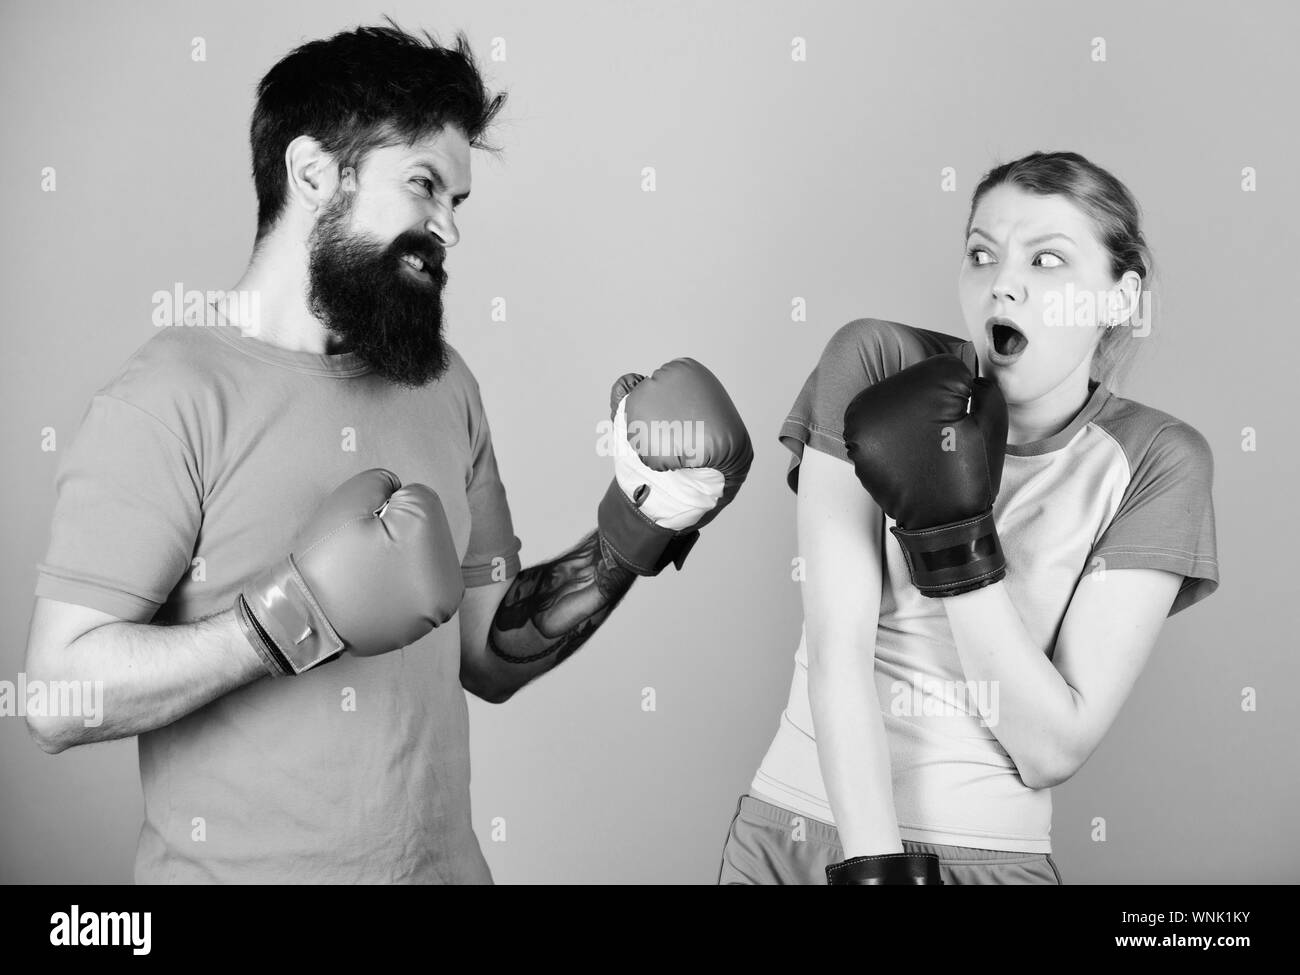 Boxing sport concept. Fille Couple hipster et pratiquer la boxe. Le sport  pour tous. Club de boxe amateur. L'égalité de possibilités. La force et la  puissance. La violence familiale. L'homme et la